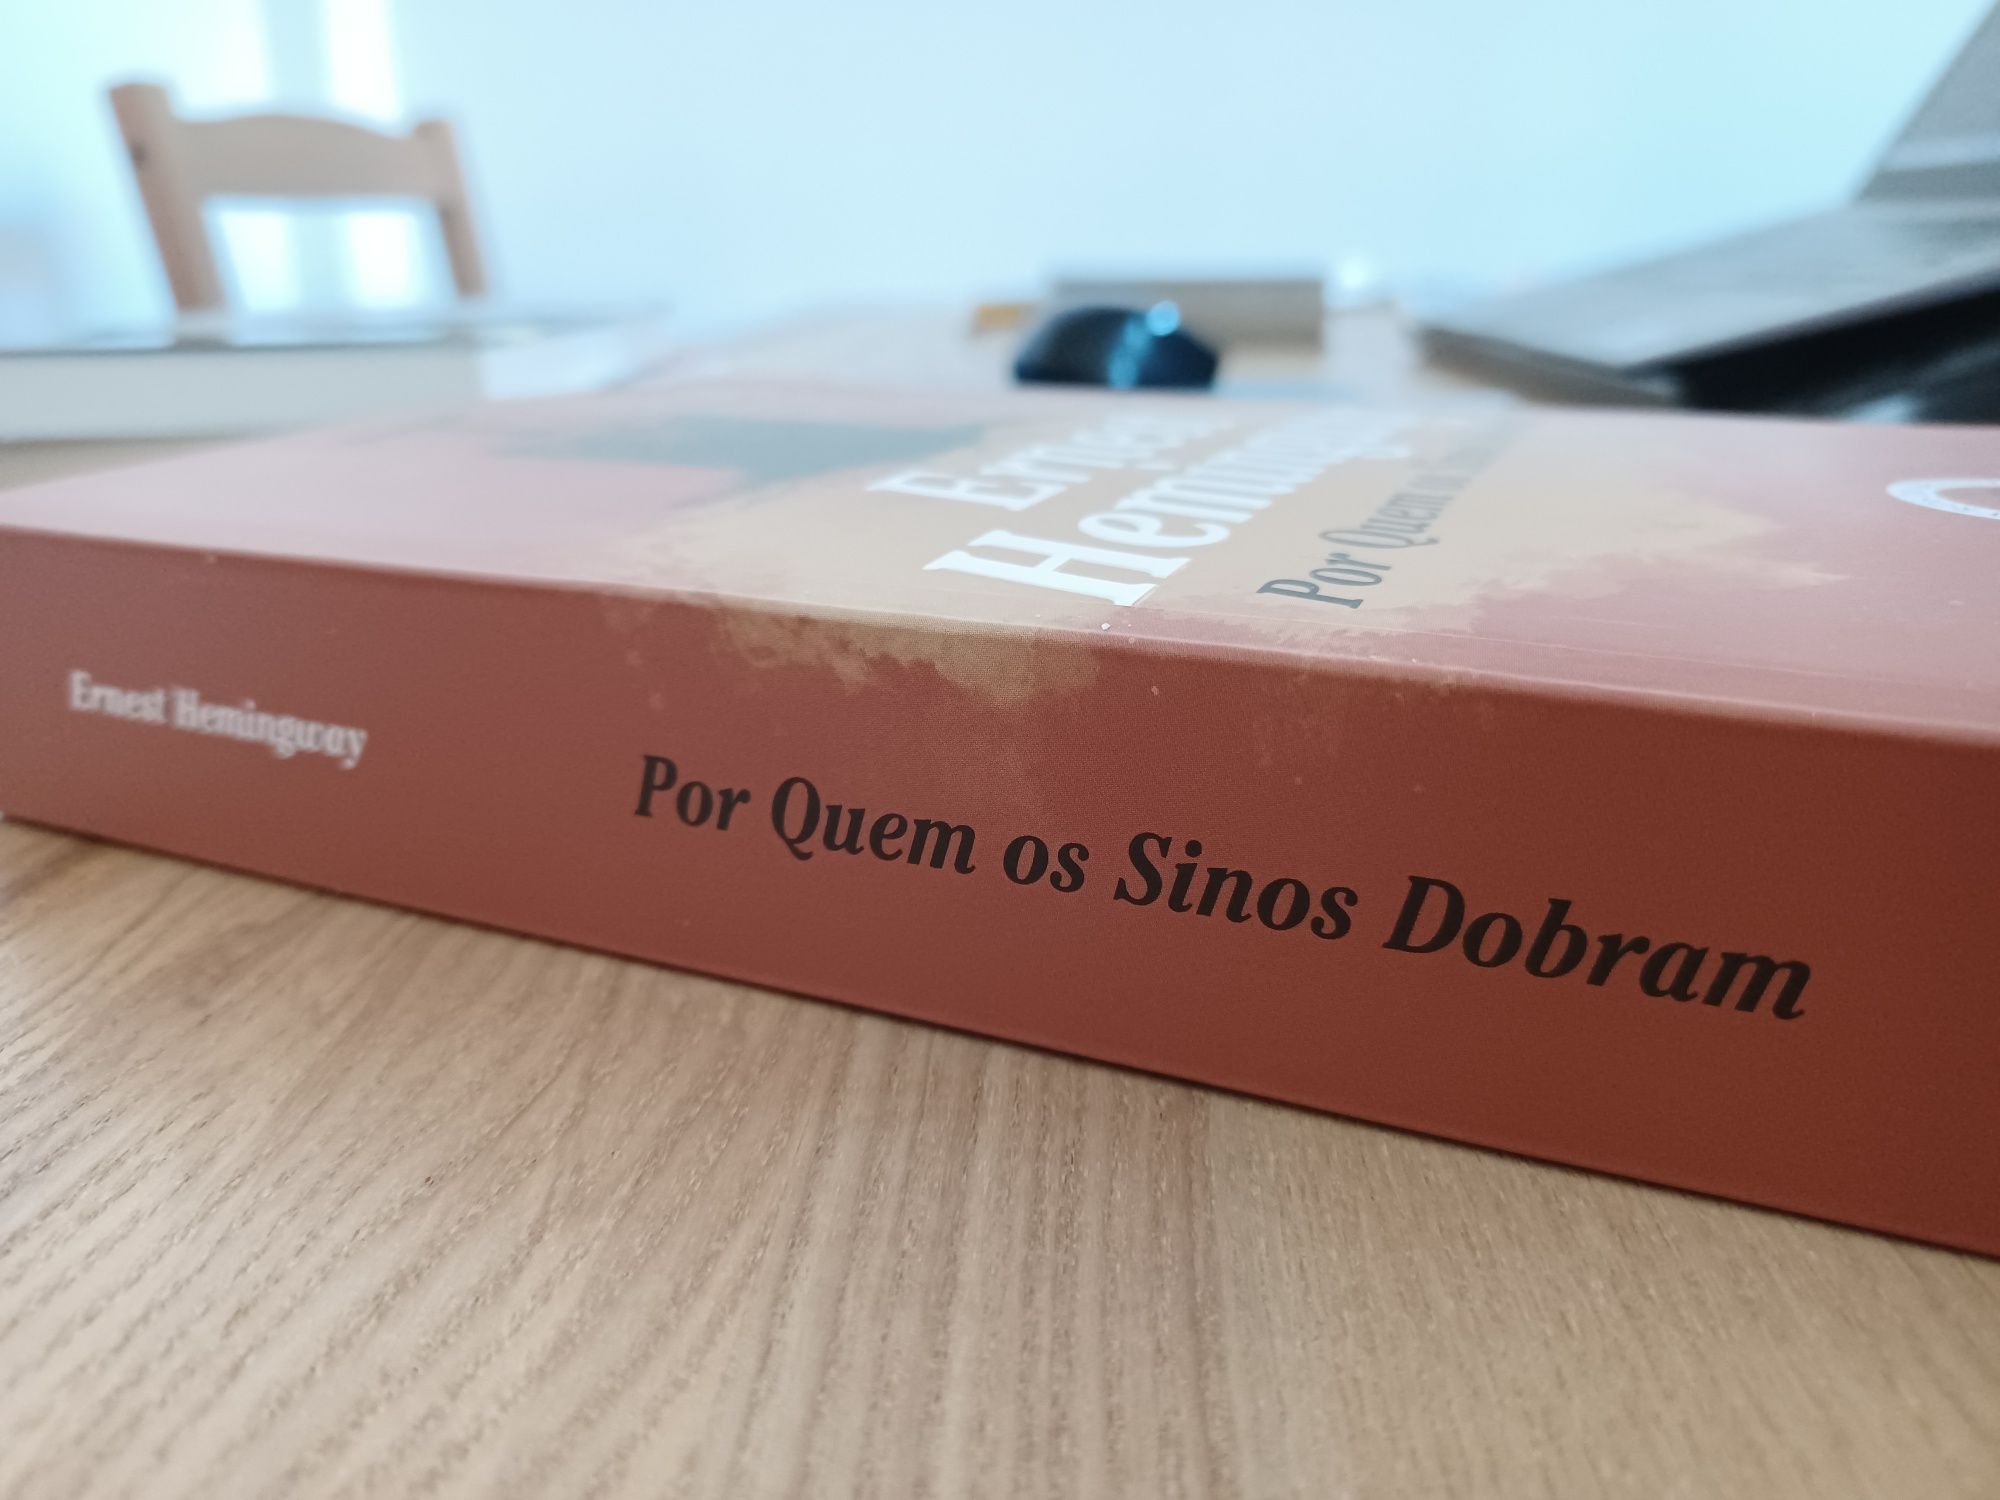 Livro Por Quem os Sinos Dobram, de Ernest Hemingway - Livros do Brasil